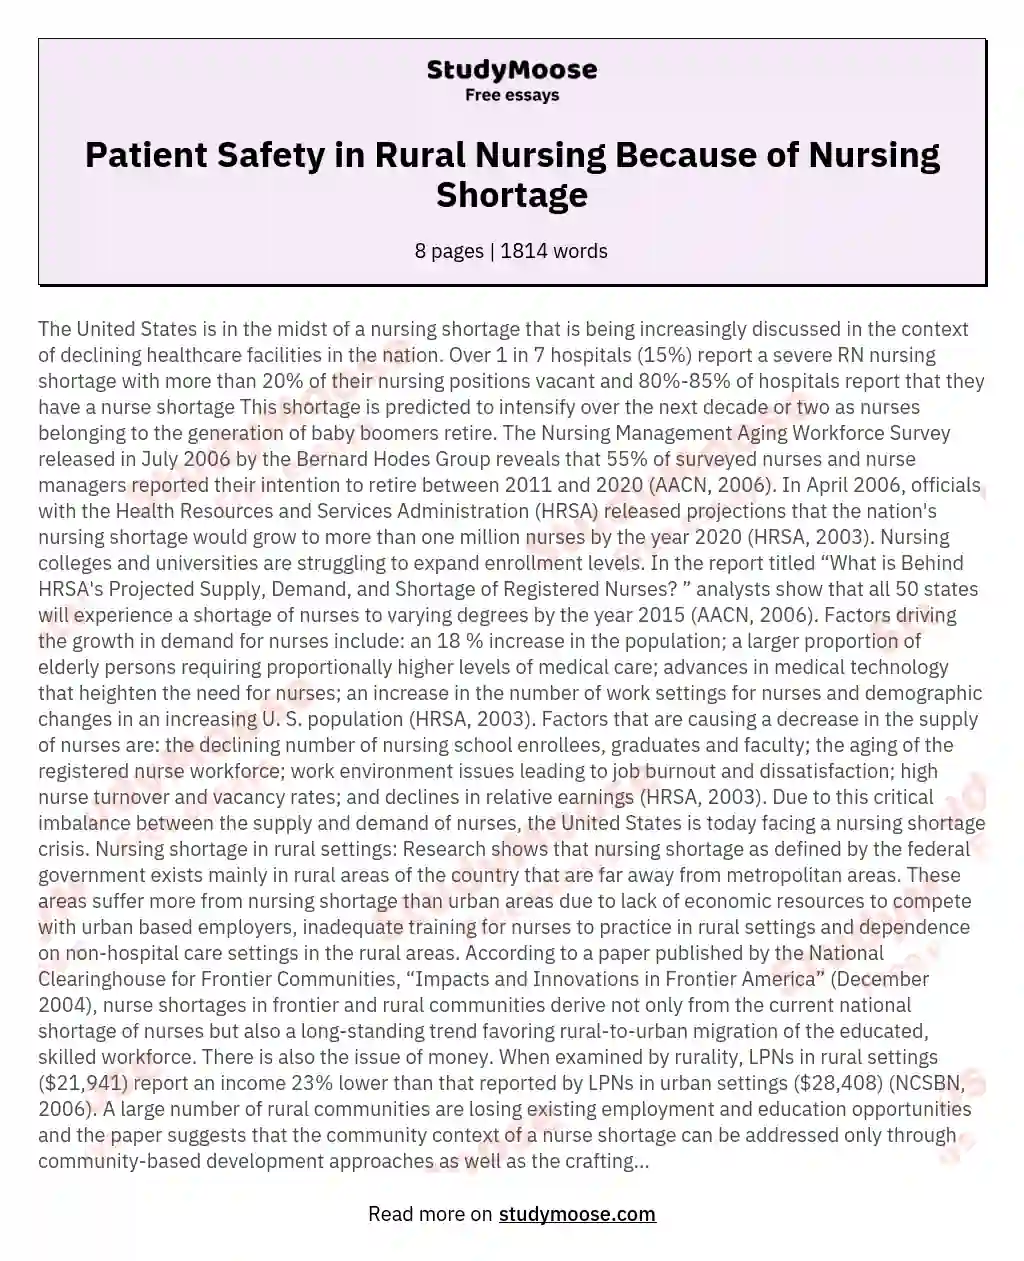 Patient Safety in Rural Nursing Because of Nursing Shortage